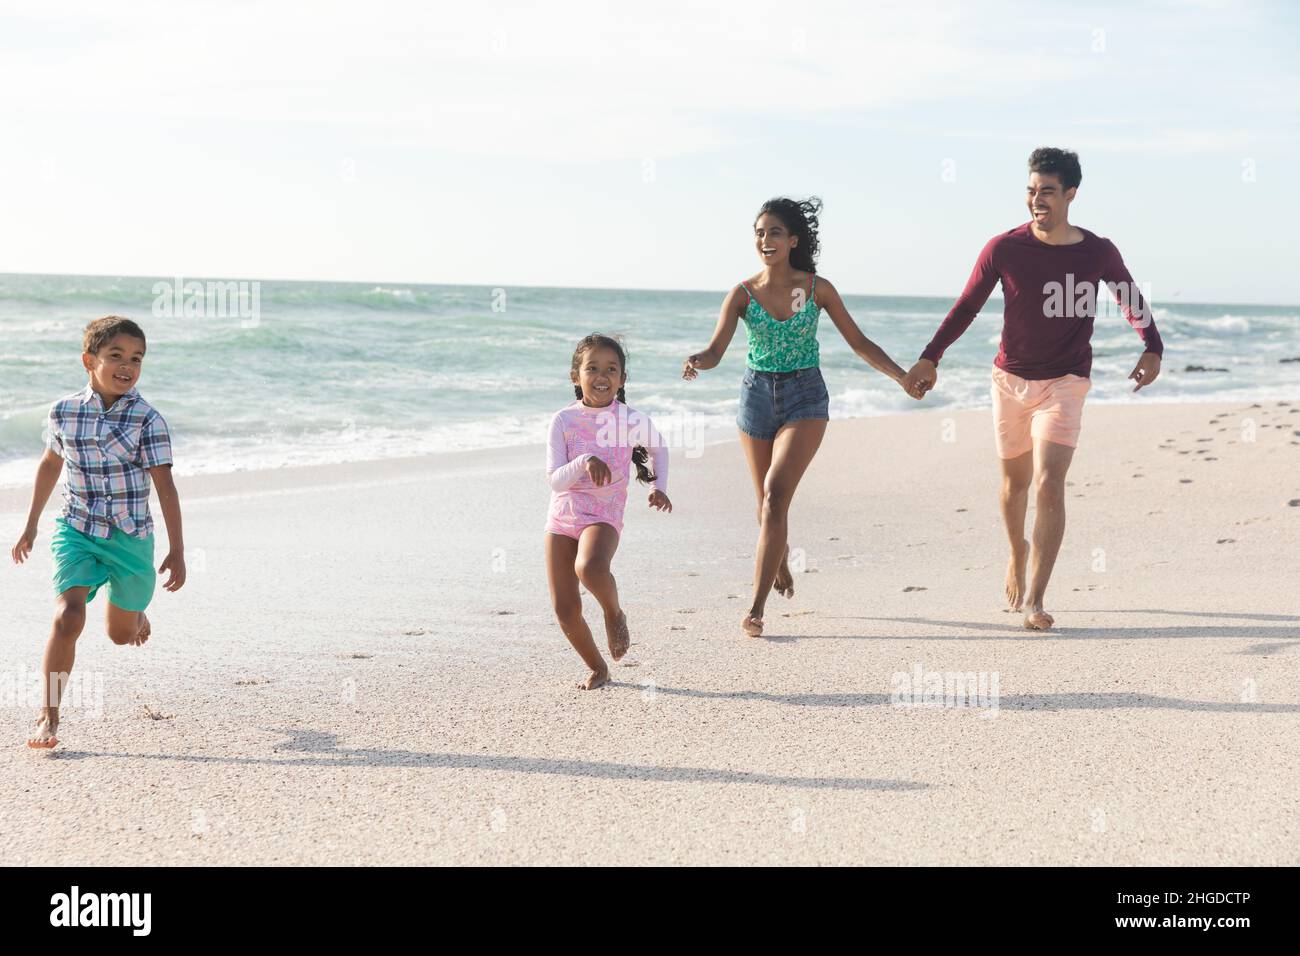 Tutta la lunghezza della famiglia multirazziale che corre insieme sulla spiaggia contro il cielo durante la giornata di sole Foto Stock